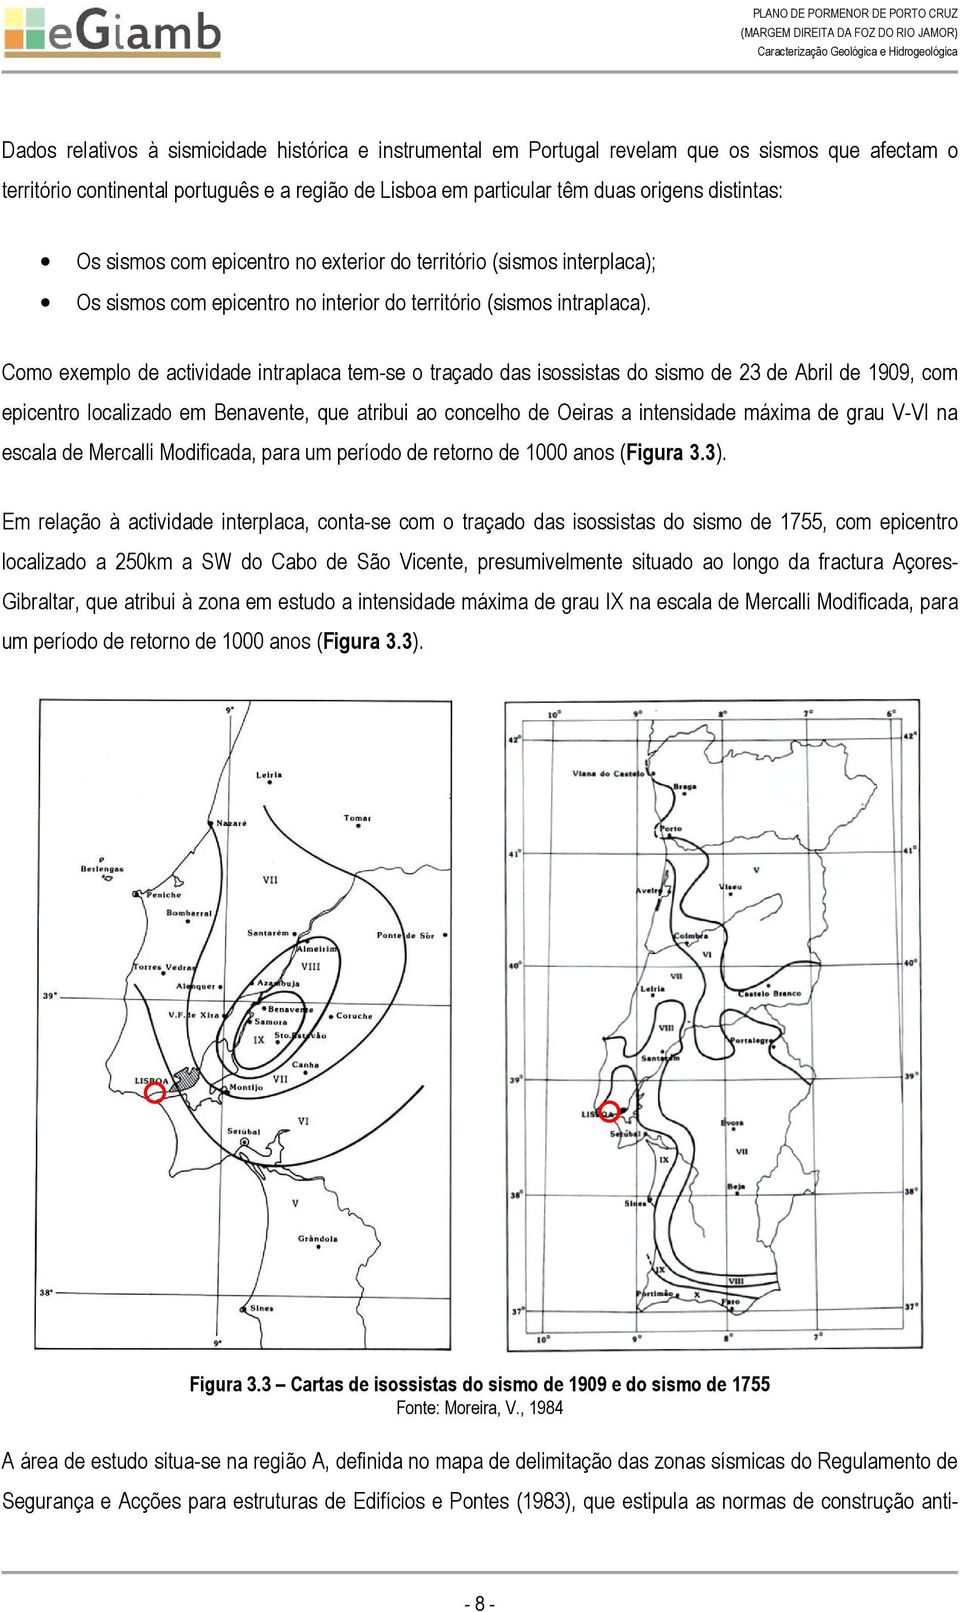 Como exemplo de actividade intraplaca tem-se o traçado das isossistas do sismo de 23 de Abril de 1909, com epicentro localizado em Benavente, que atribui ao concelho de Oeiras a intensidade máxima de